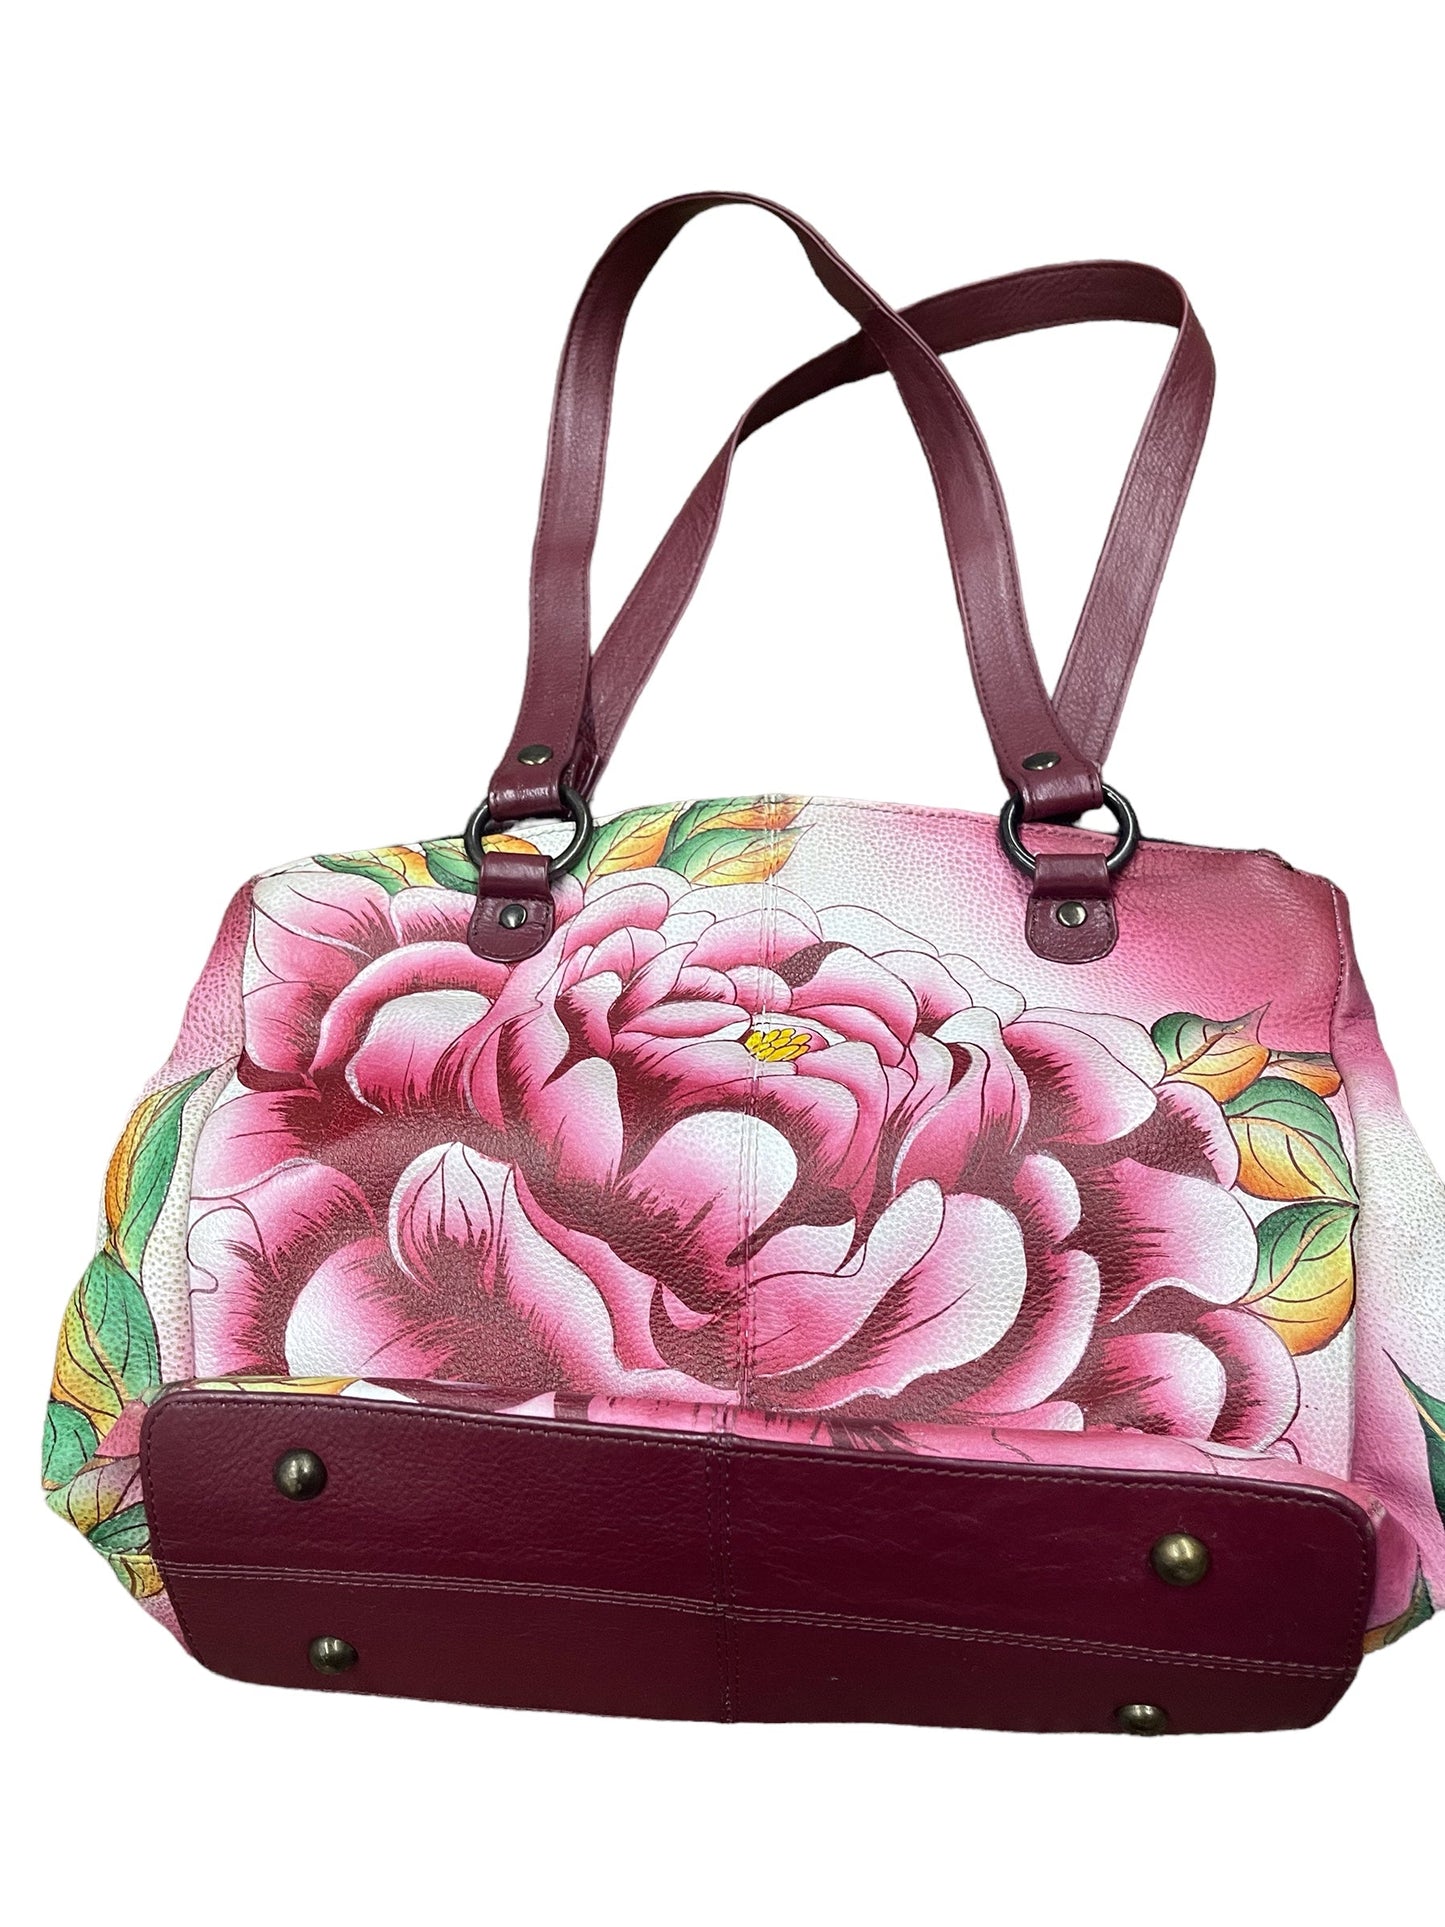 Handbag Designer By Anuschka  Size: Medium